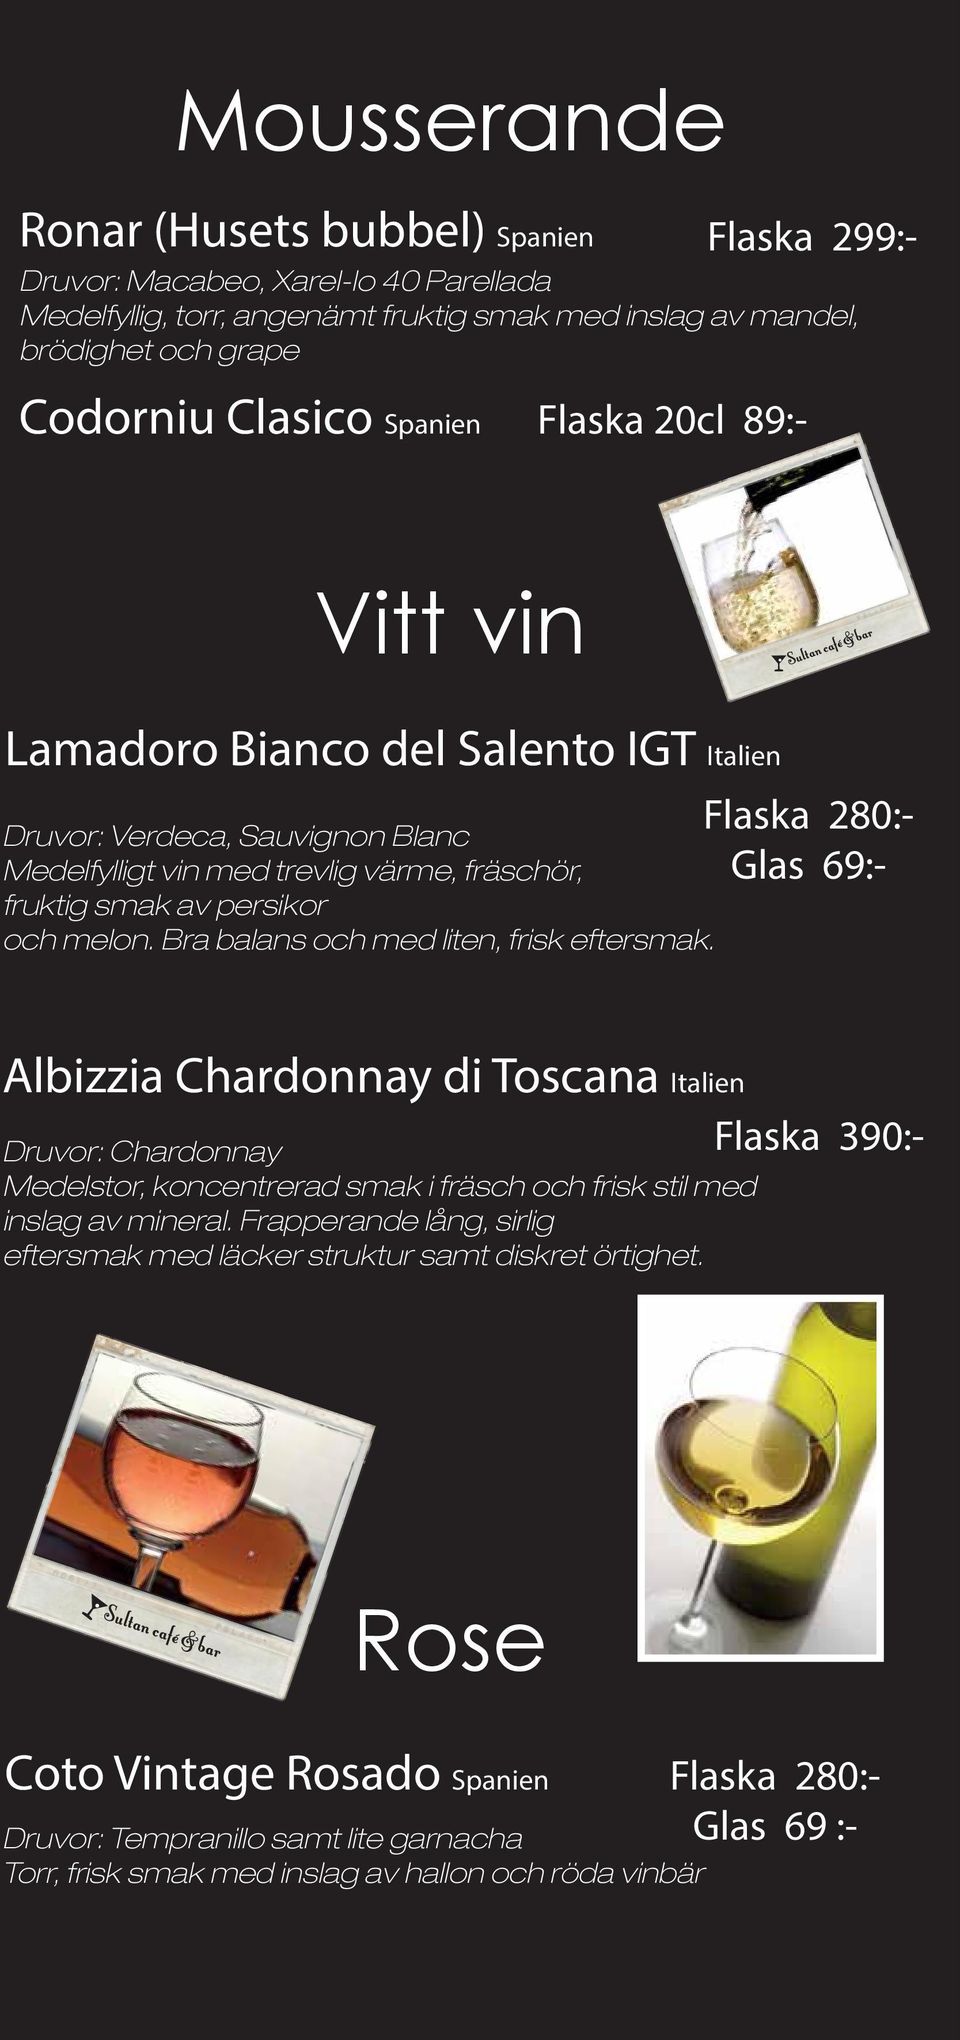 Bra balans och med liten, frisk eftersmak. Flaska 280:- Glas Albizzia Chardonnay di Toscana Italien Druvor: Chardonnay Medelstor, koncentrerad smak i fräsch och frisk stil med inslag av mineral.